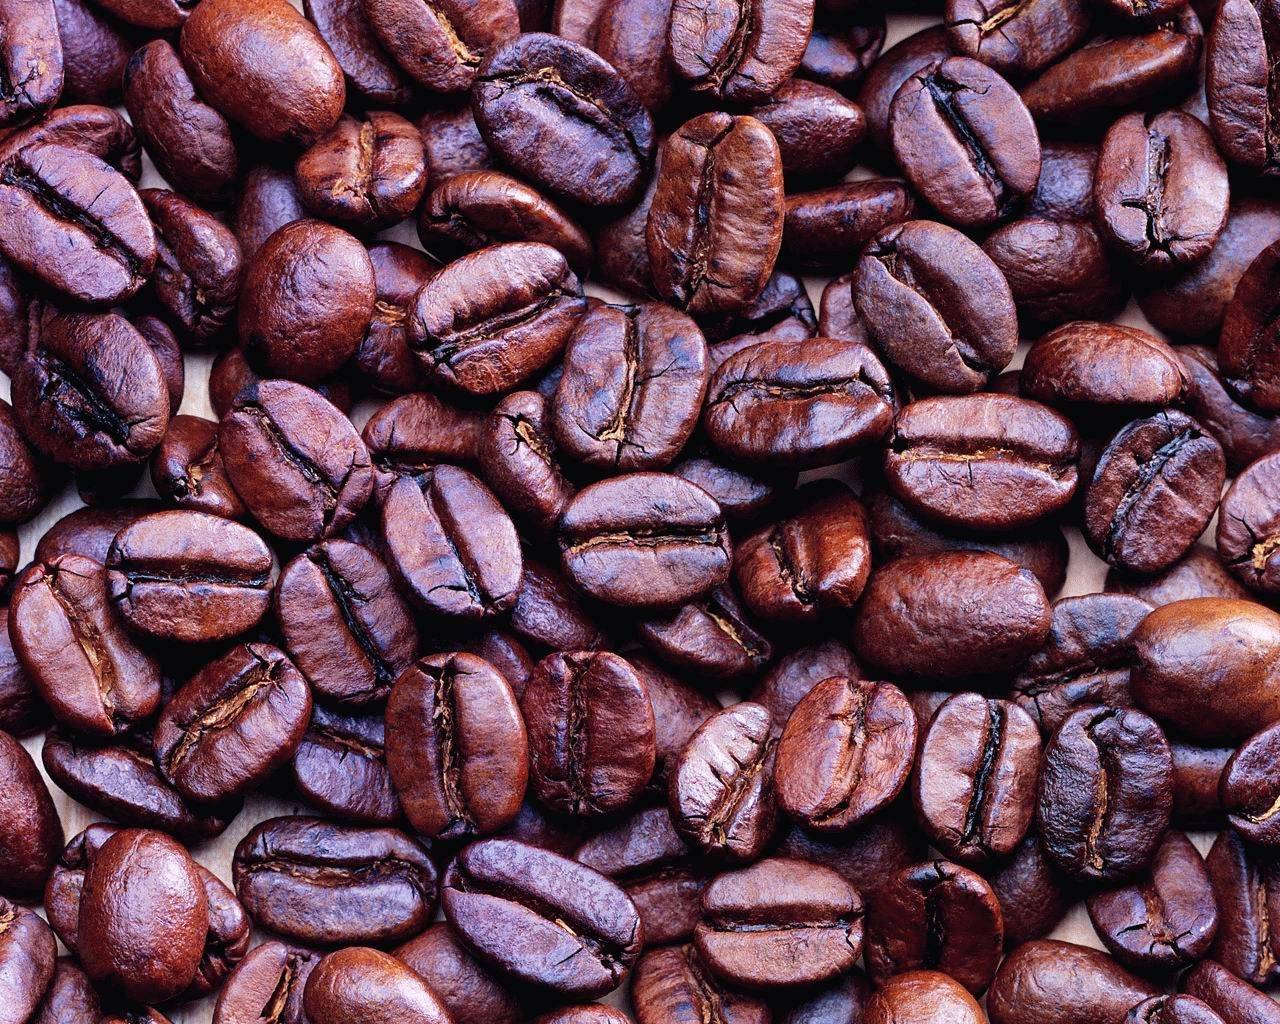 Кофе глясе: понятие, классический домашний рецепт и вариации